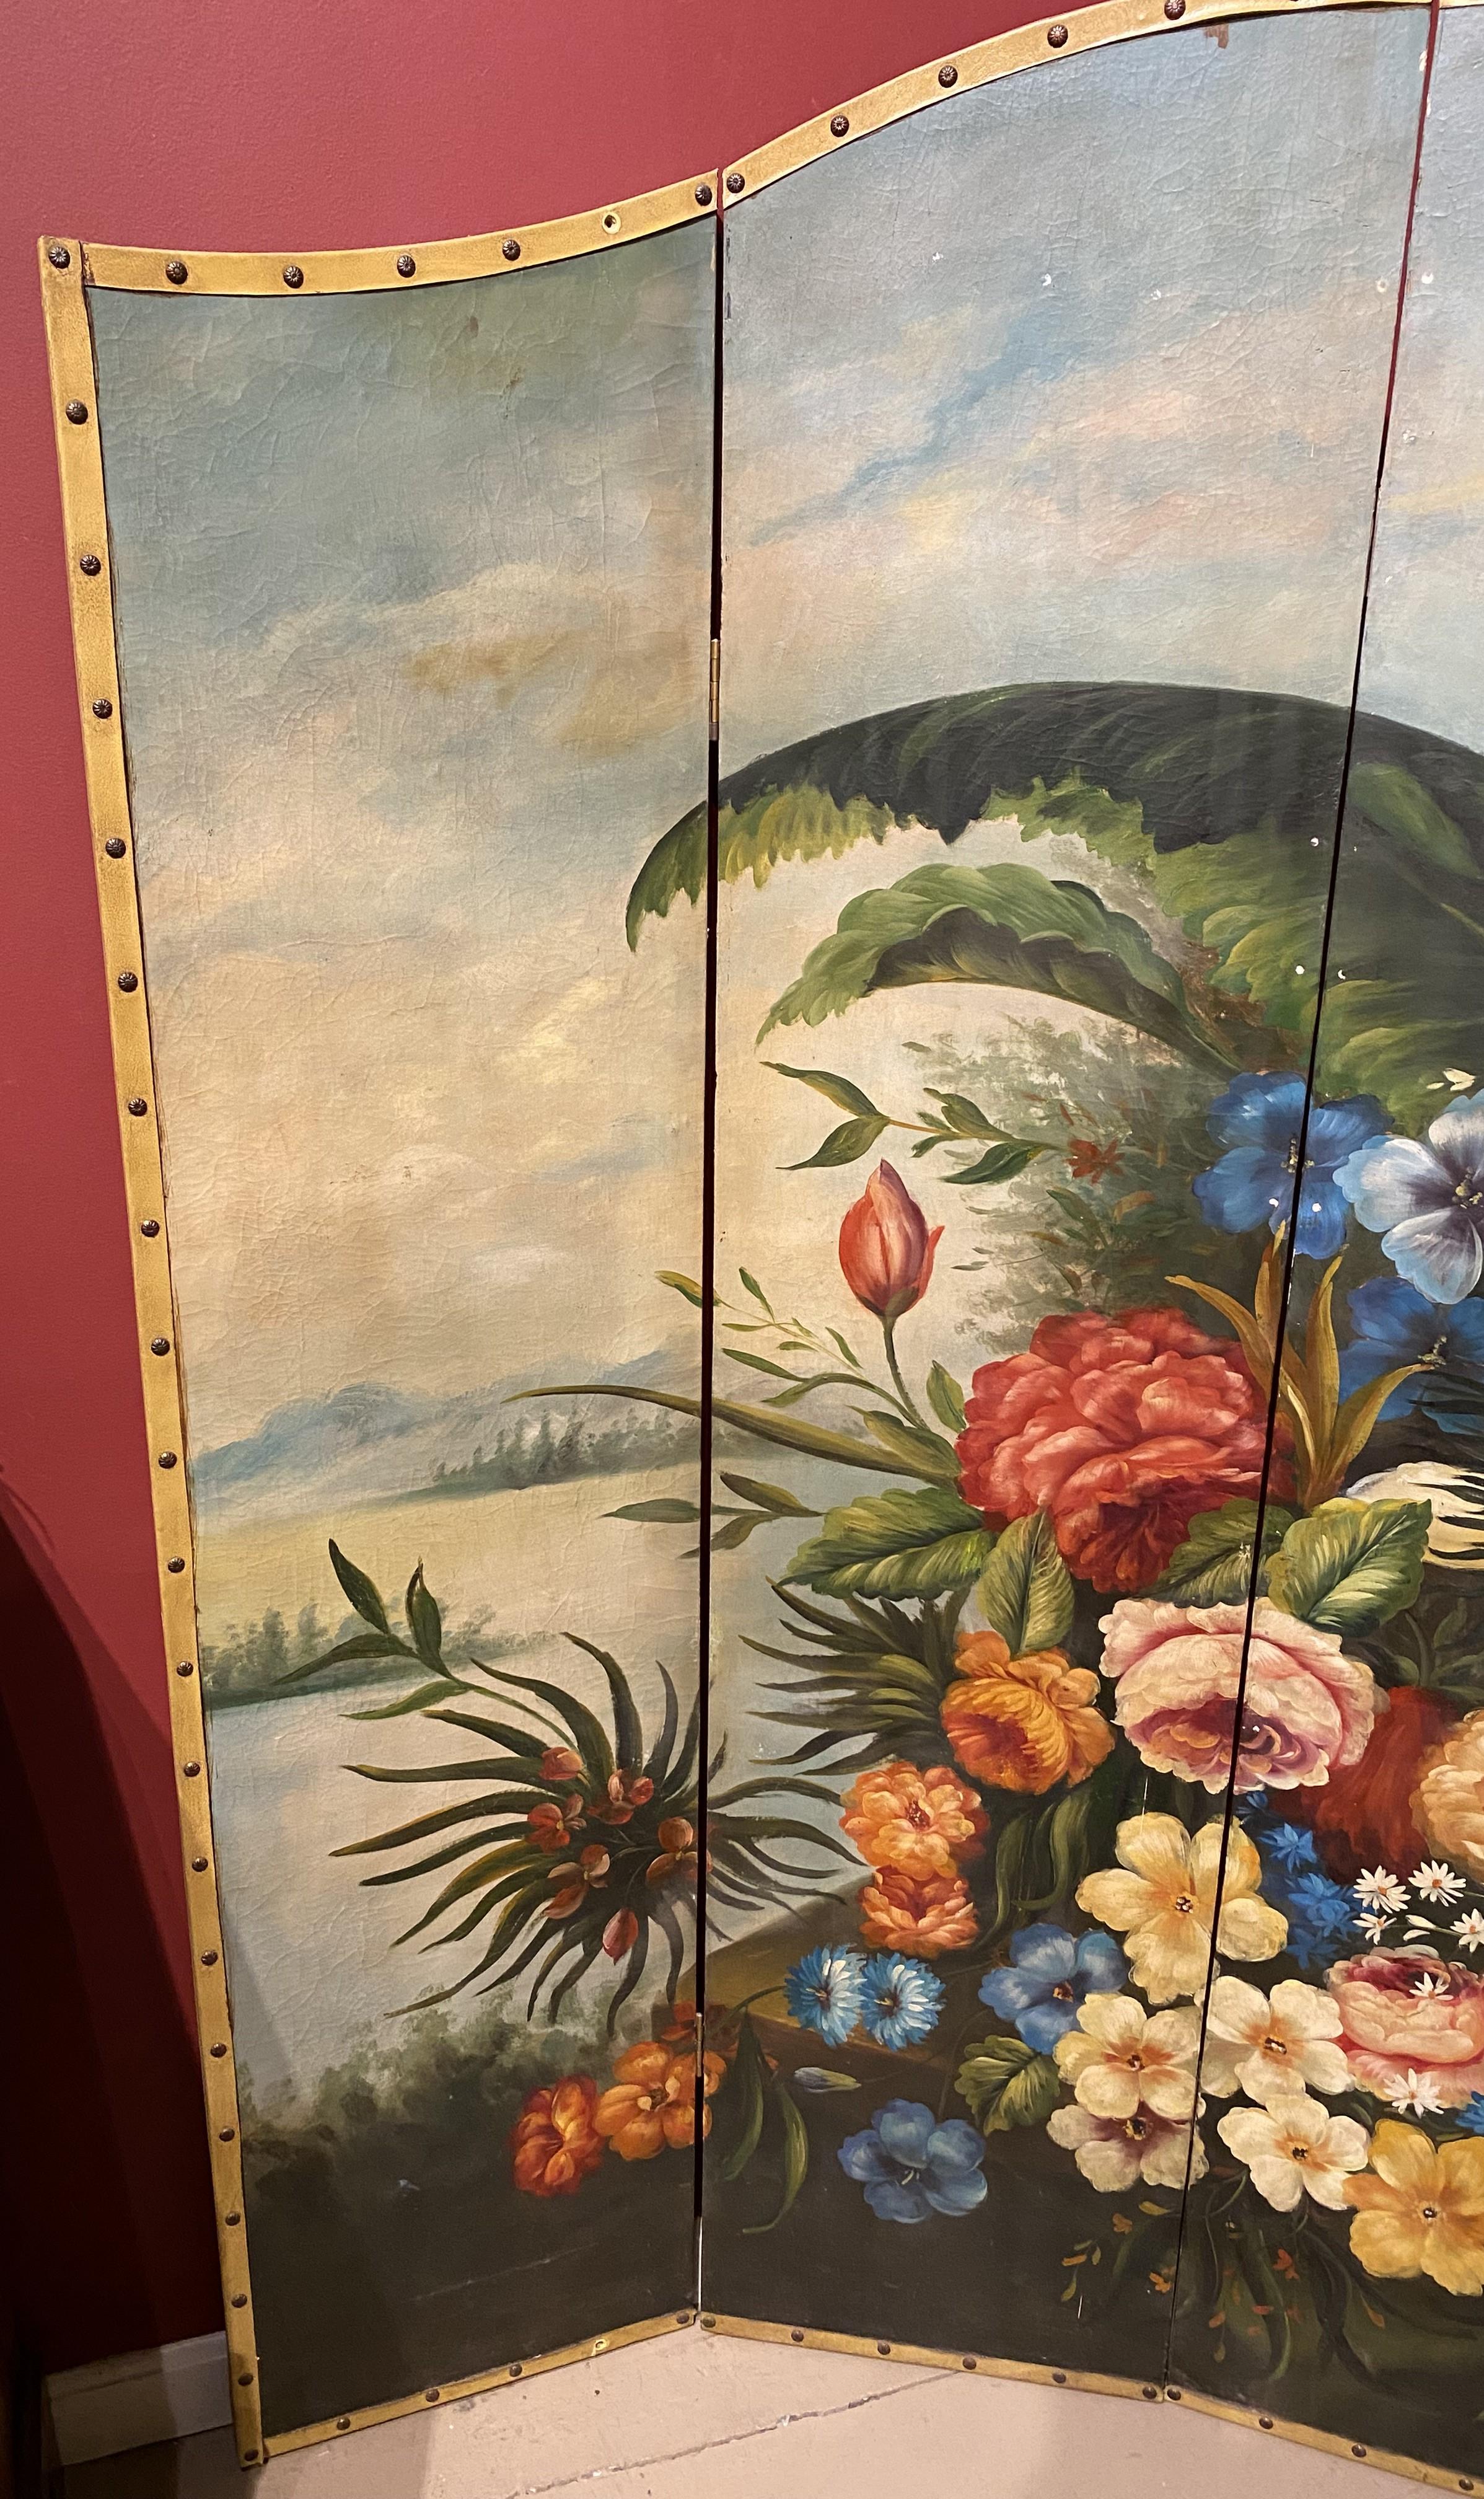 Ein farbenfrohes, tropisches Blumenstillleben mit Inselhintergrund des englischen Künstlers Aubrey Beardsley (1872-1898). Beardsley wurde in Brighton, England, geboren und begann nach seinem Studium an der Westminster School of Art, Zeichnungen und